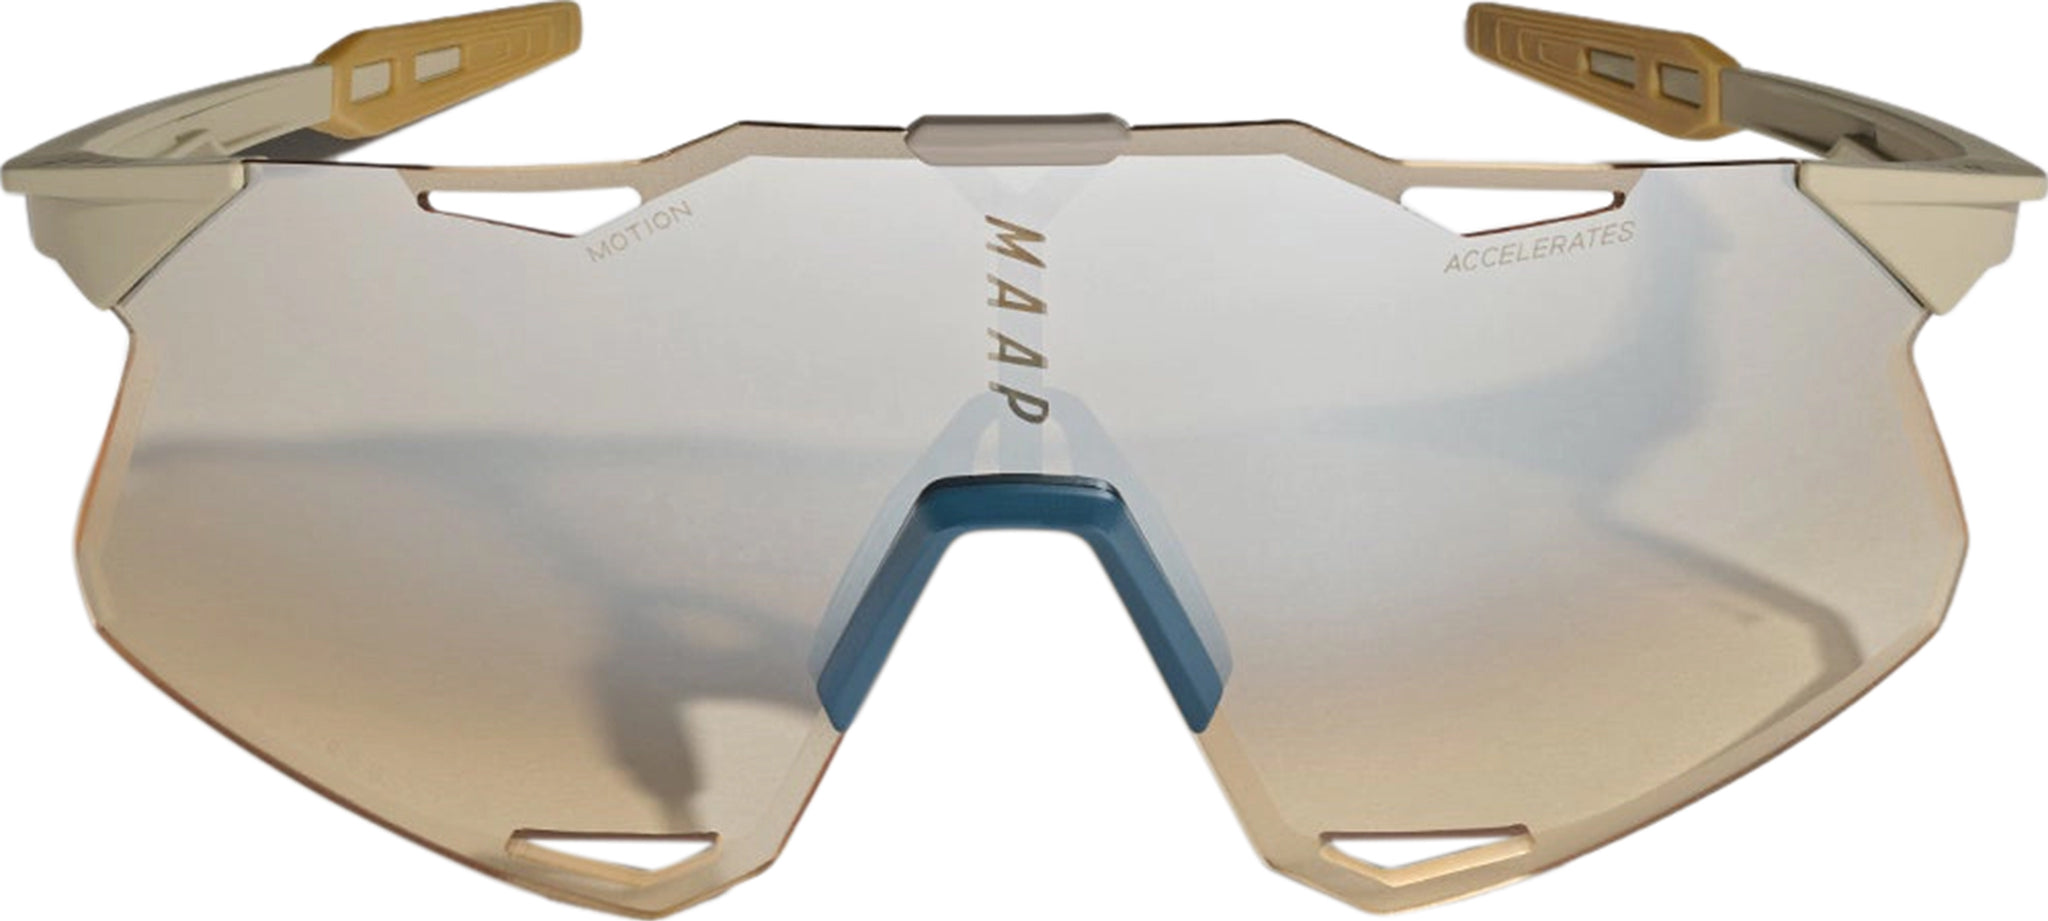 MAAP MAAP x 100% Hypercraft Sunglasses - Men's | Altitude Sports